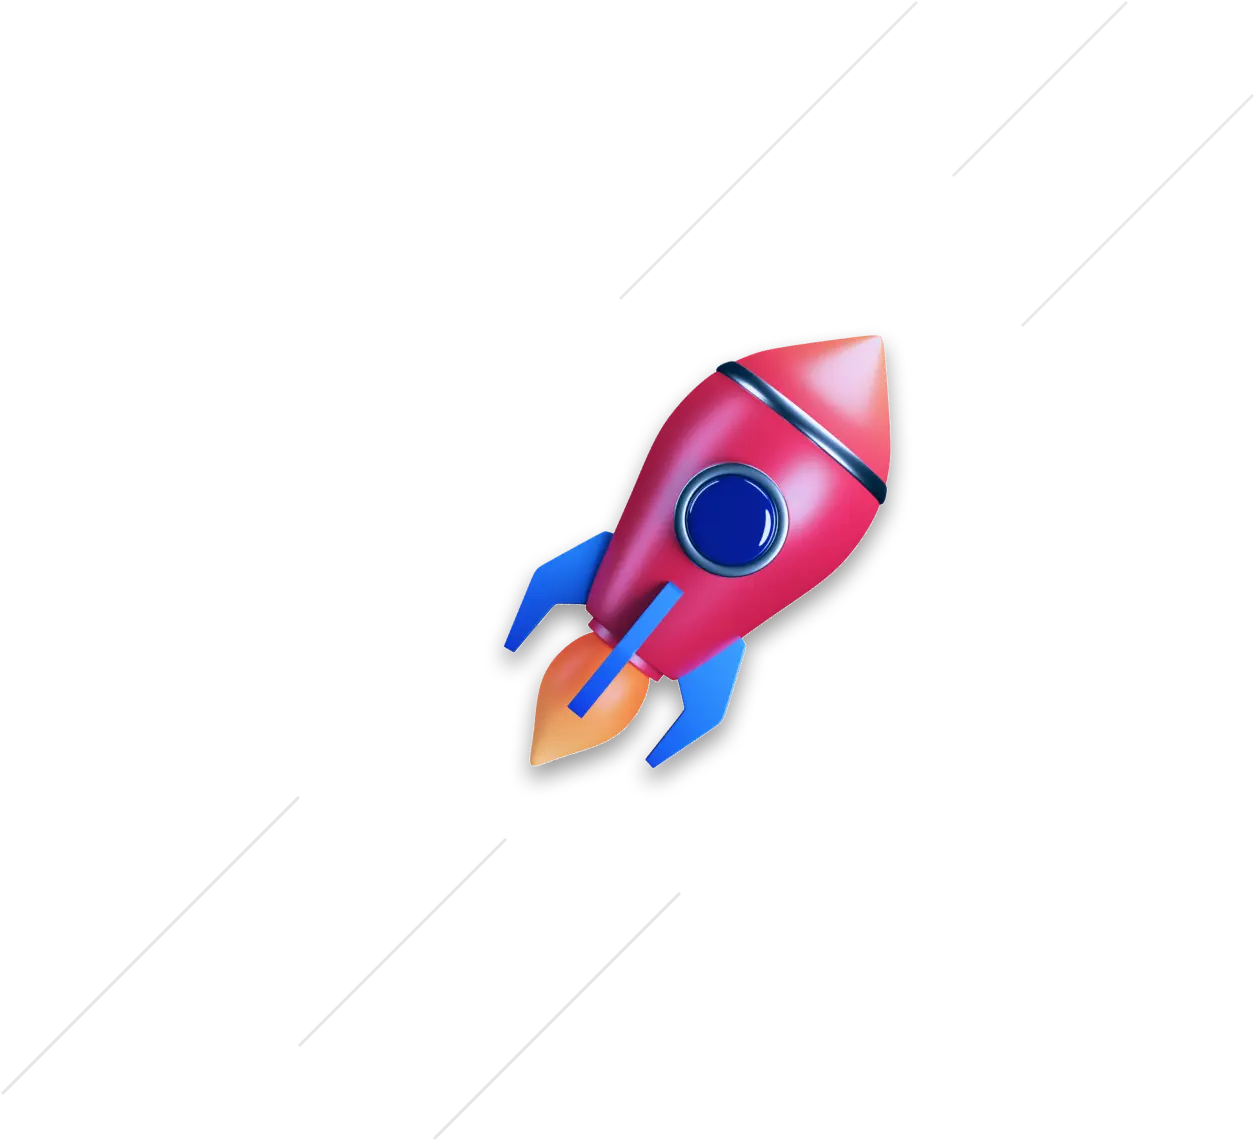 3D Rocket Backgroound Imageebp